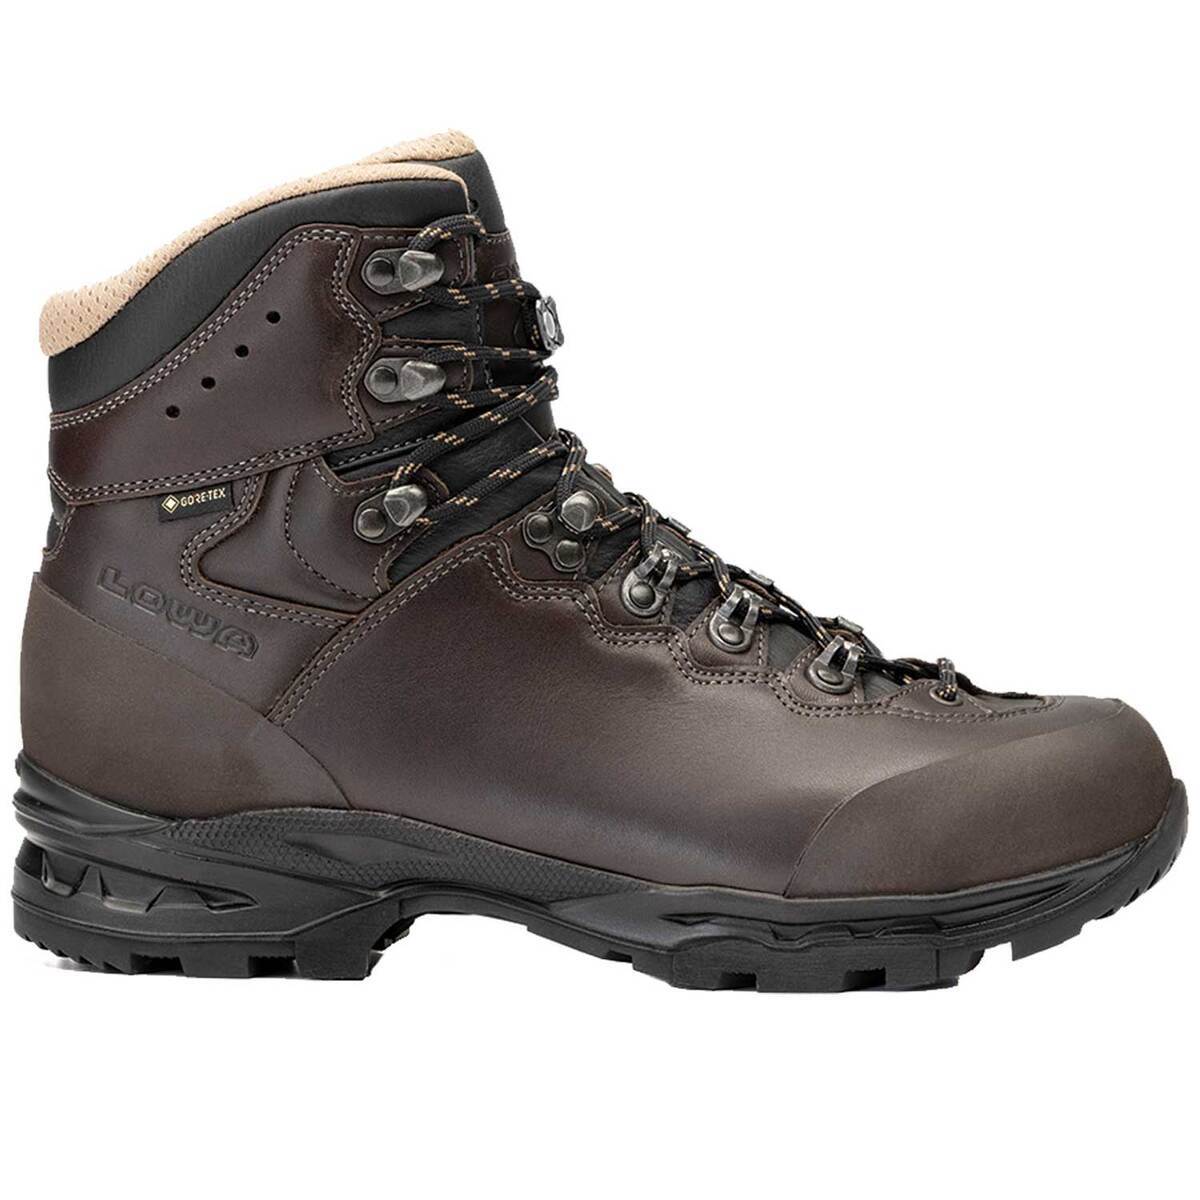 LOWA Men's Camino GTX FG Uninsulated Waterproof Hiking Boots ...